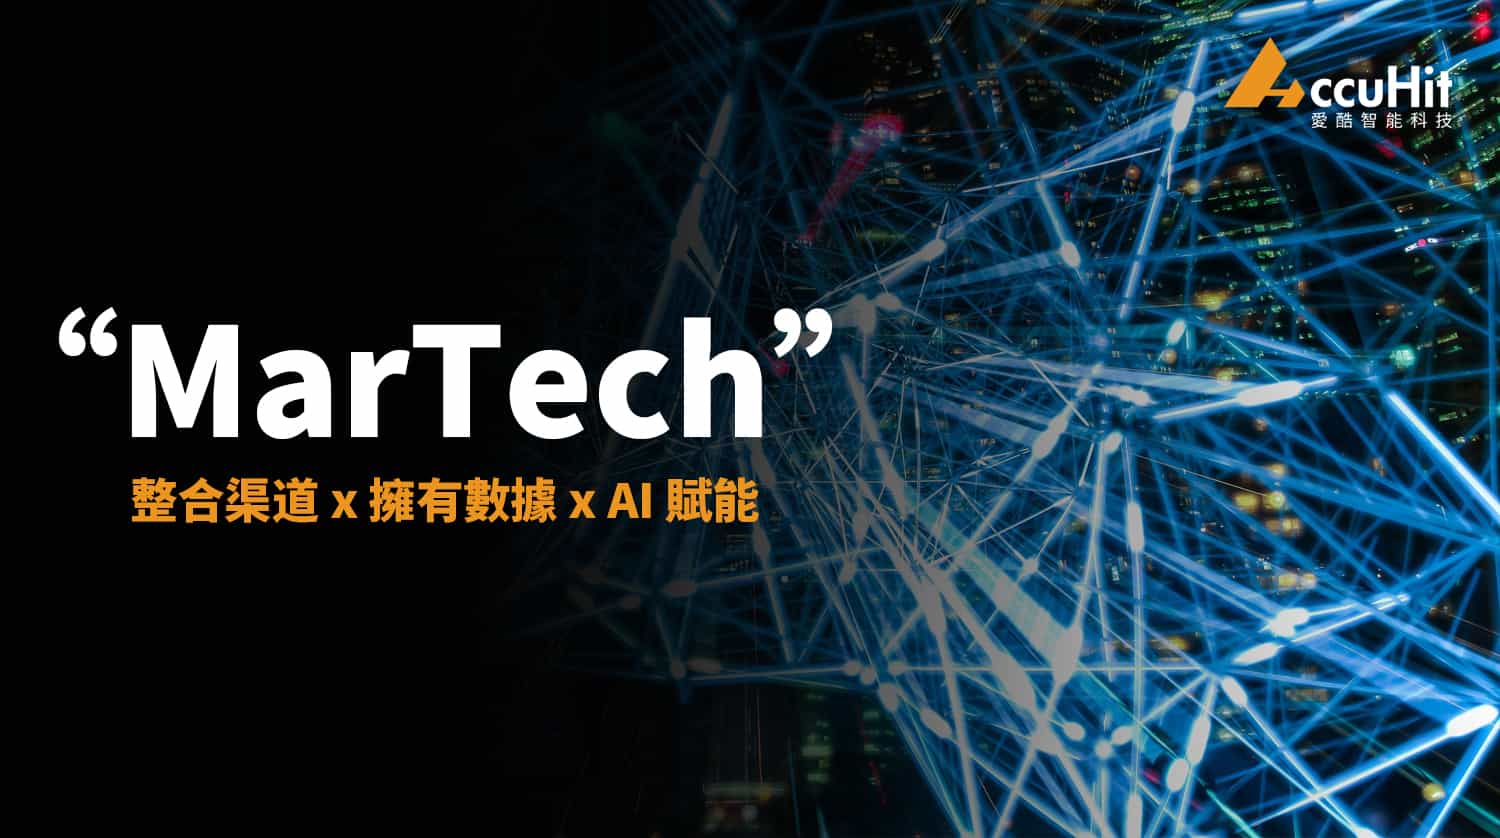 MarTech 是現今備受矚目的趨勢，未來更是勢在必行